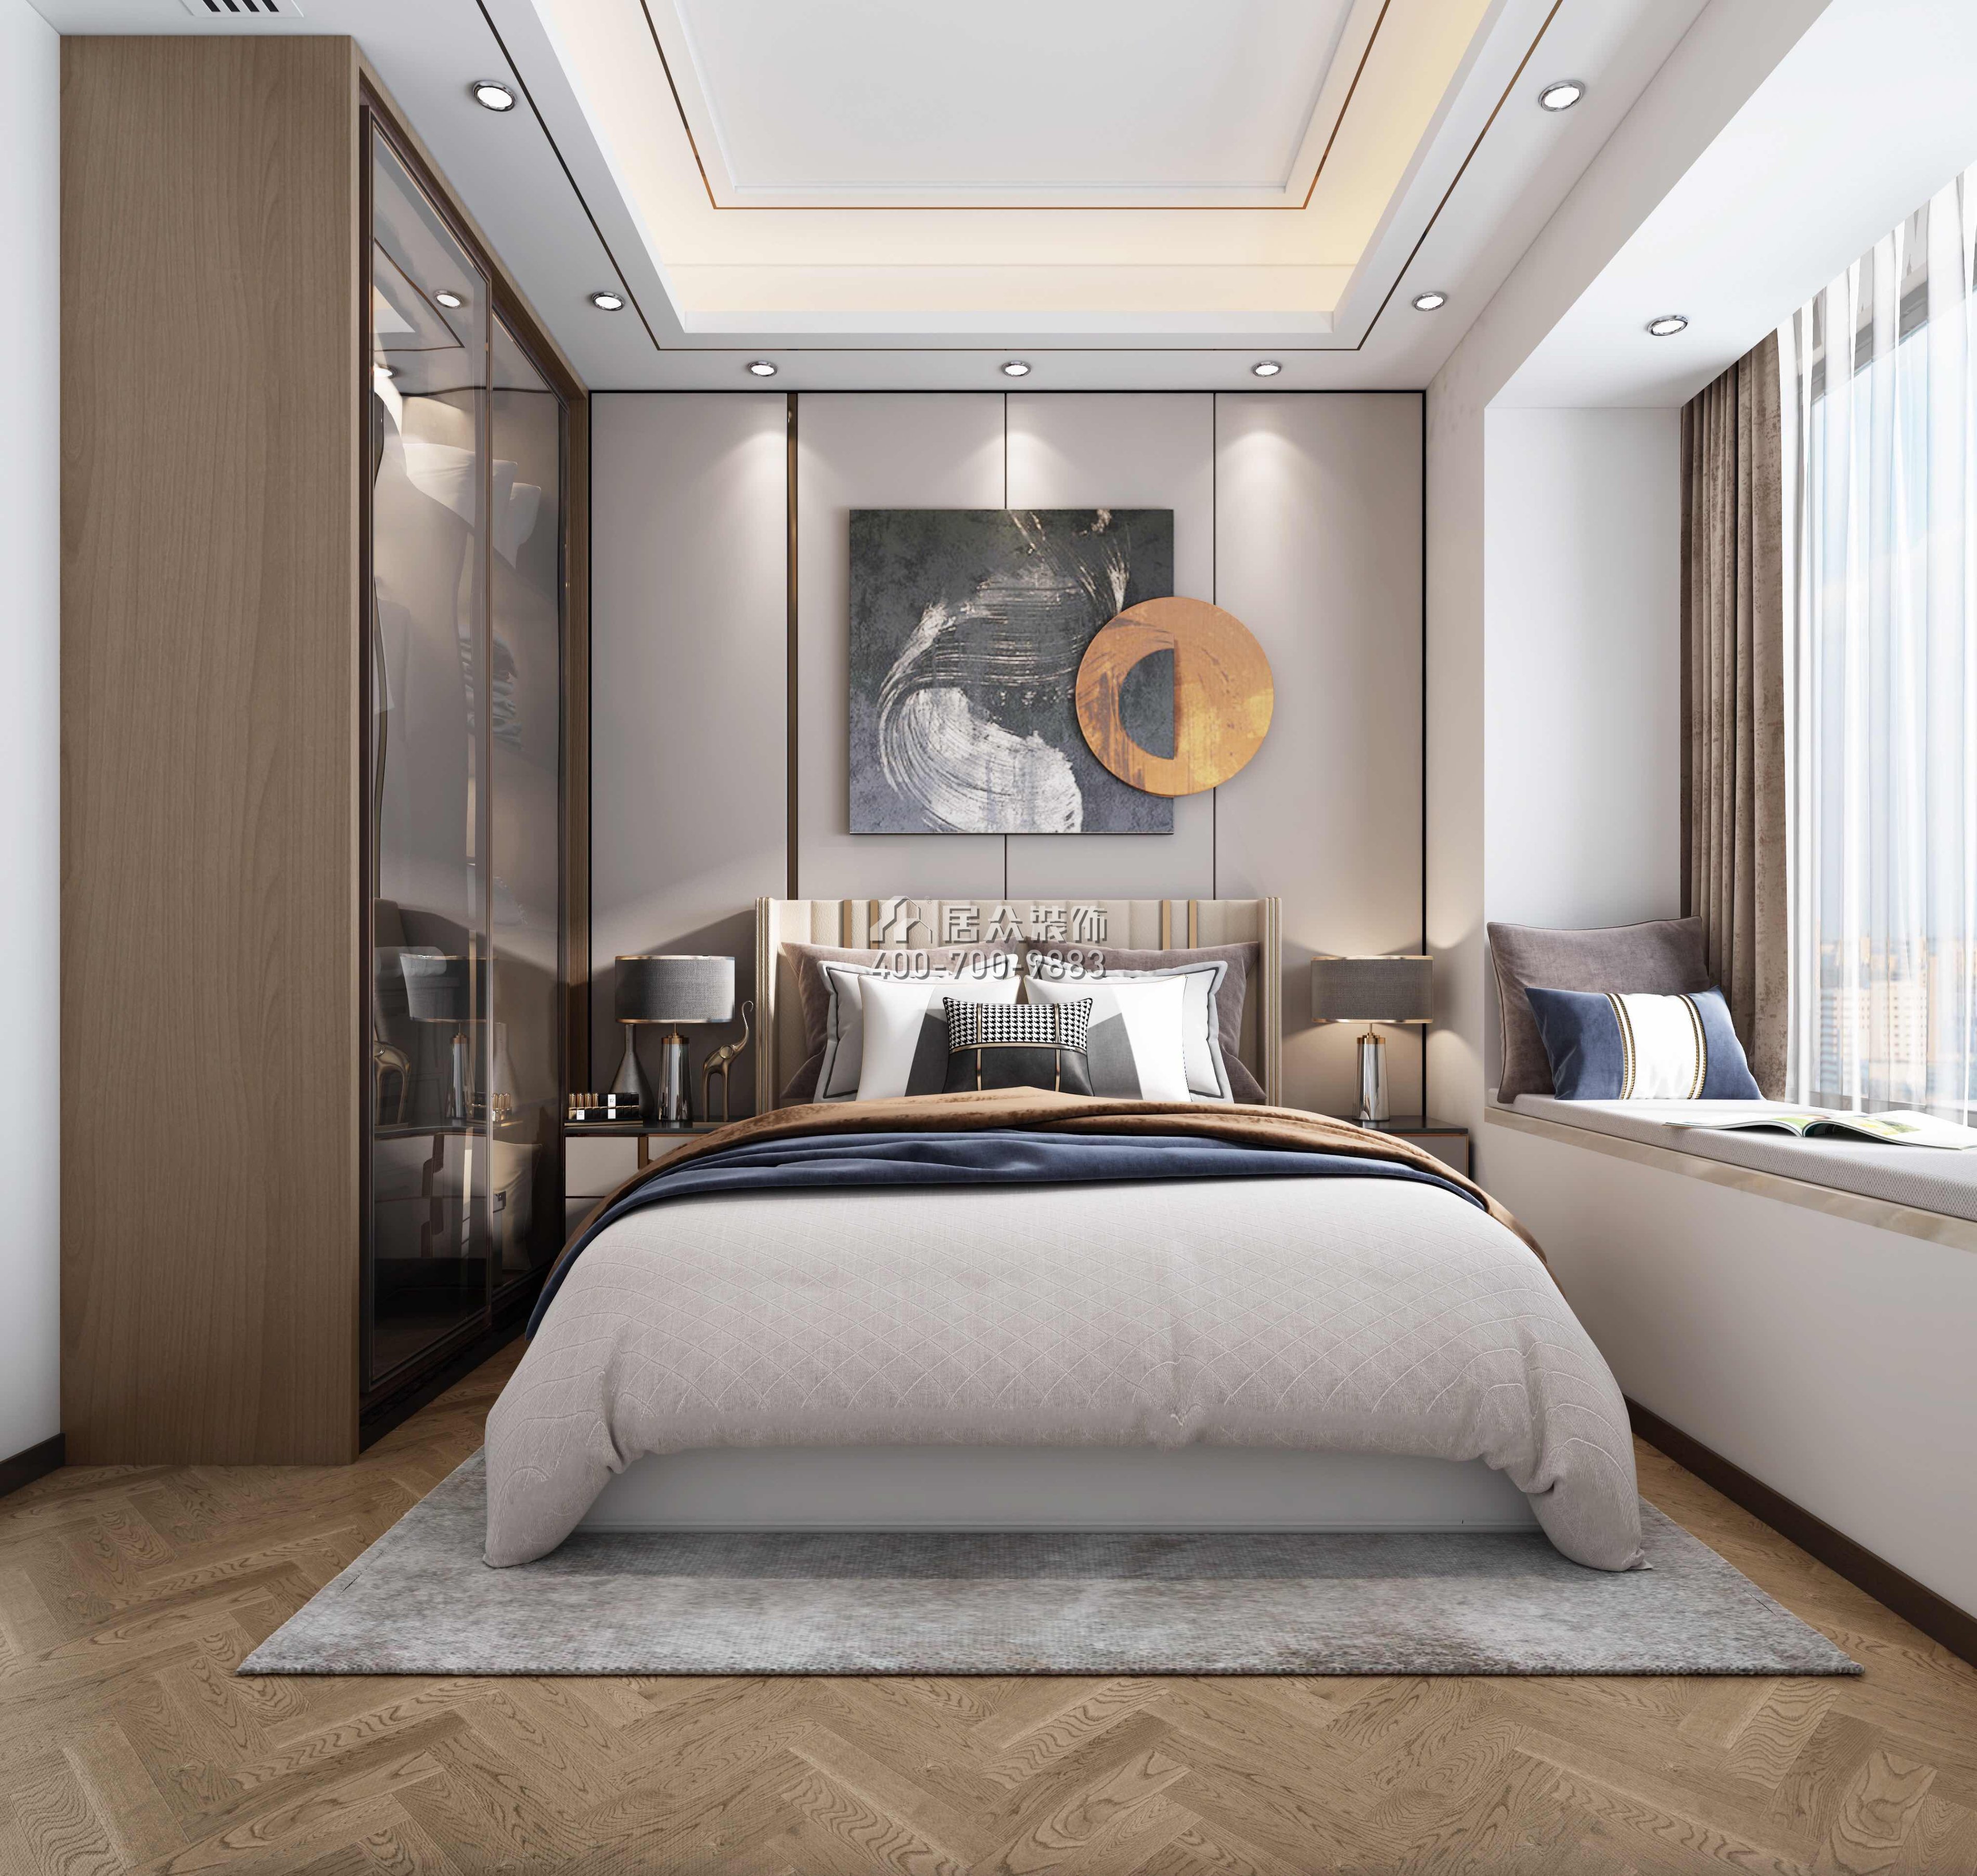 华发广场悦海湾150平方米现代简约风格平层户型卧室装修效果图